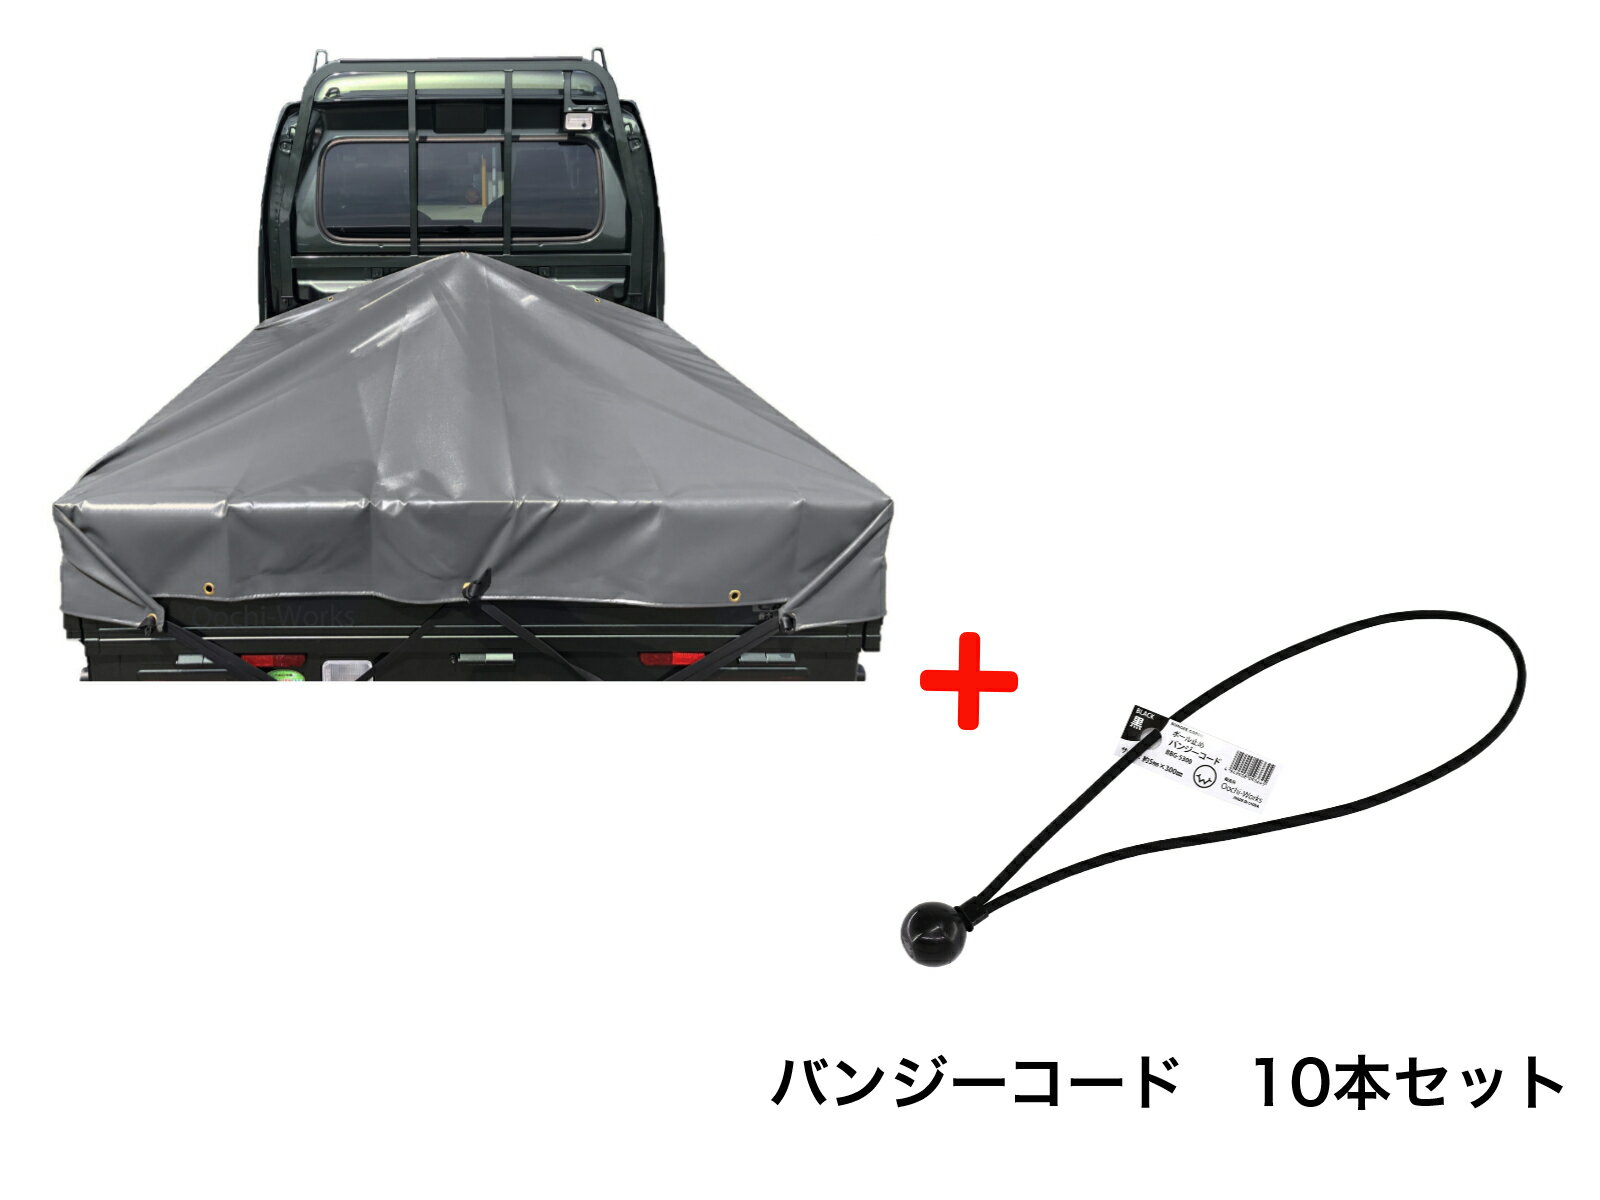 バンジーコード 10本付 スーパーキャリイシート スロープ型 シート単品 グレー (前部)2.0m・(後部)1.9m×(長さ)1.7m 台形シート